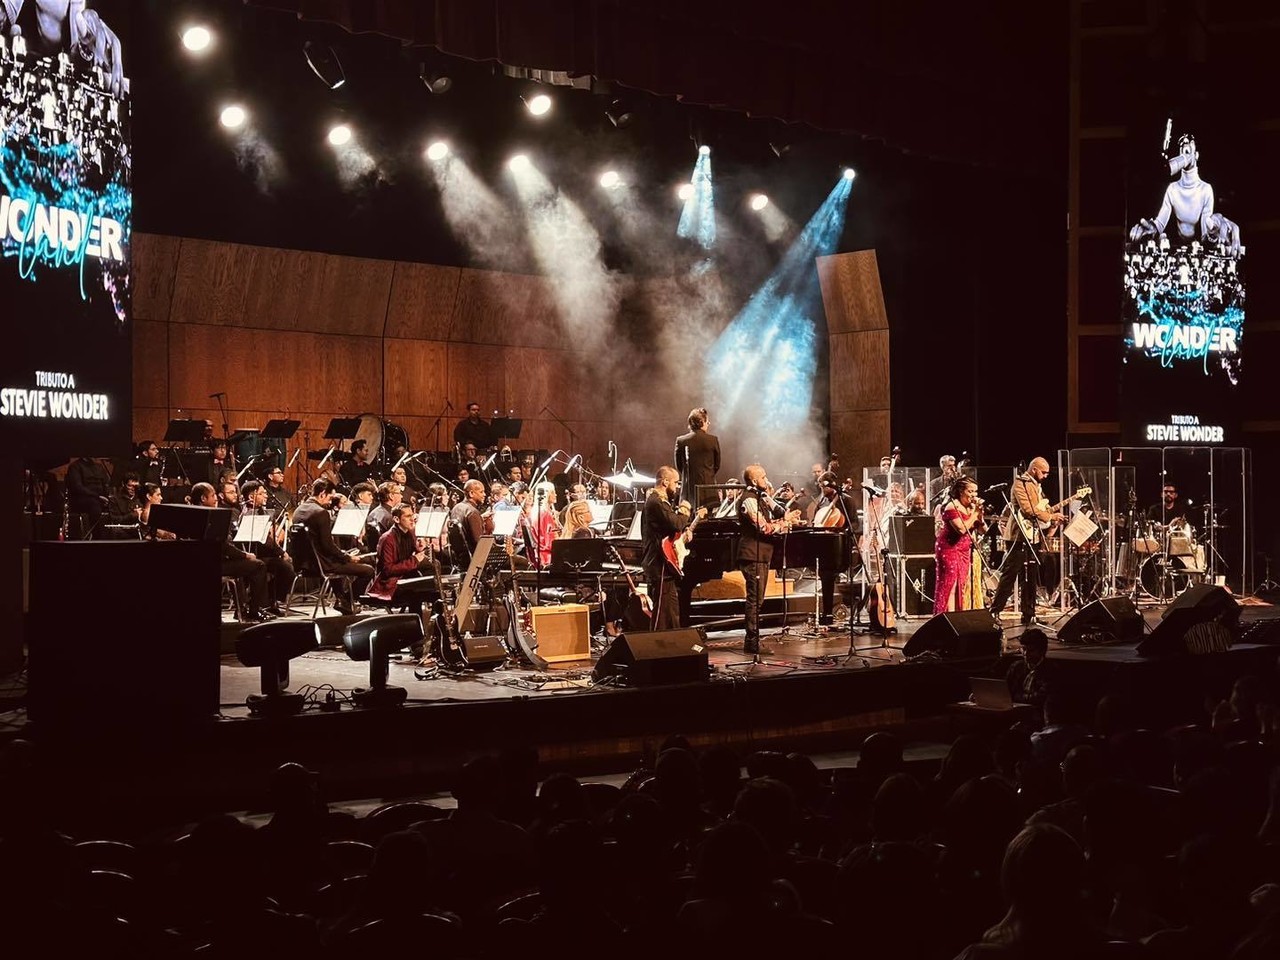 El concierto se llevará a cabo en el Teatro de la Ciudad Fernando Soler el jueves 25 de abril a las 20:30 horas. (Fotografía: Facebook)